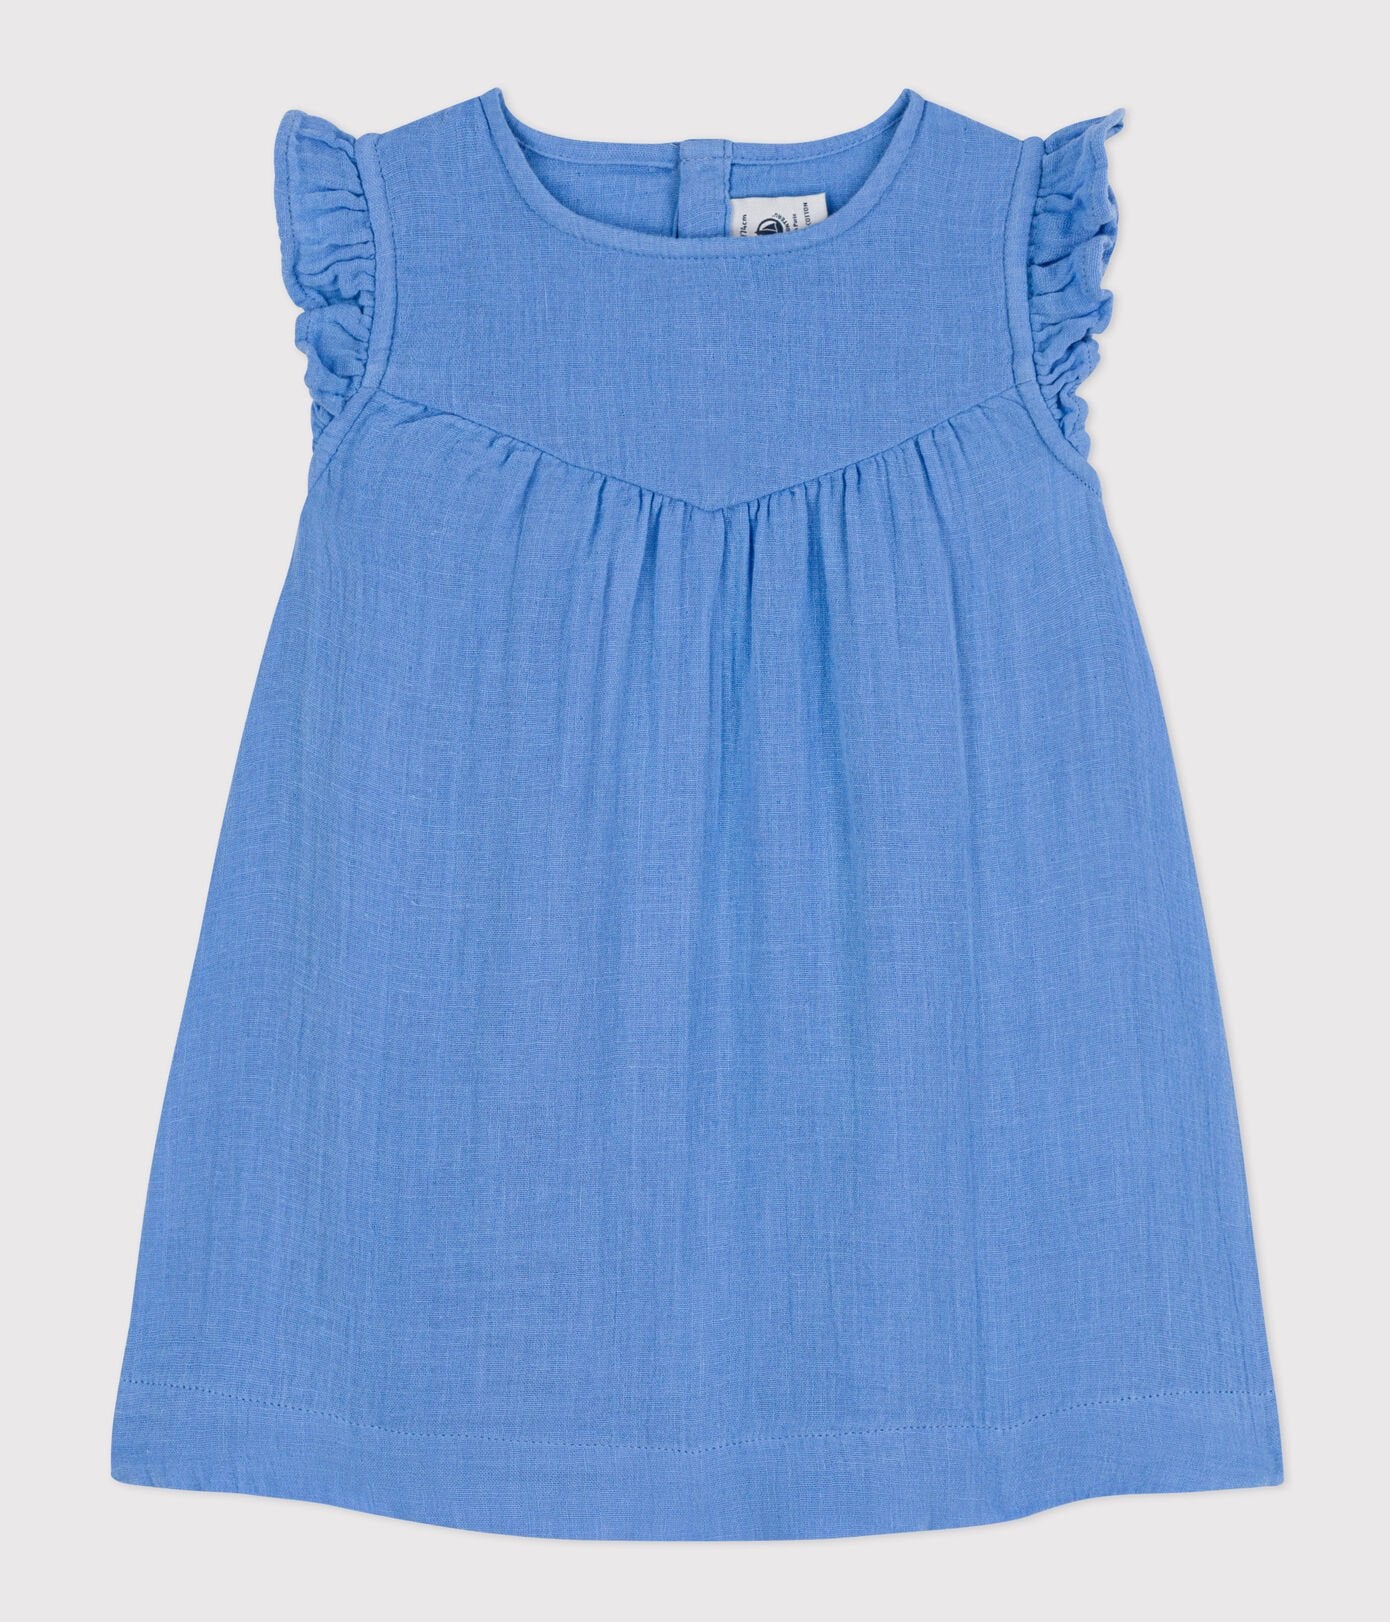 Petit Bateau infant girl gauze sleeveless dress